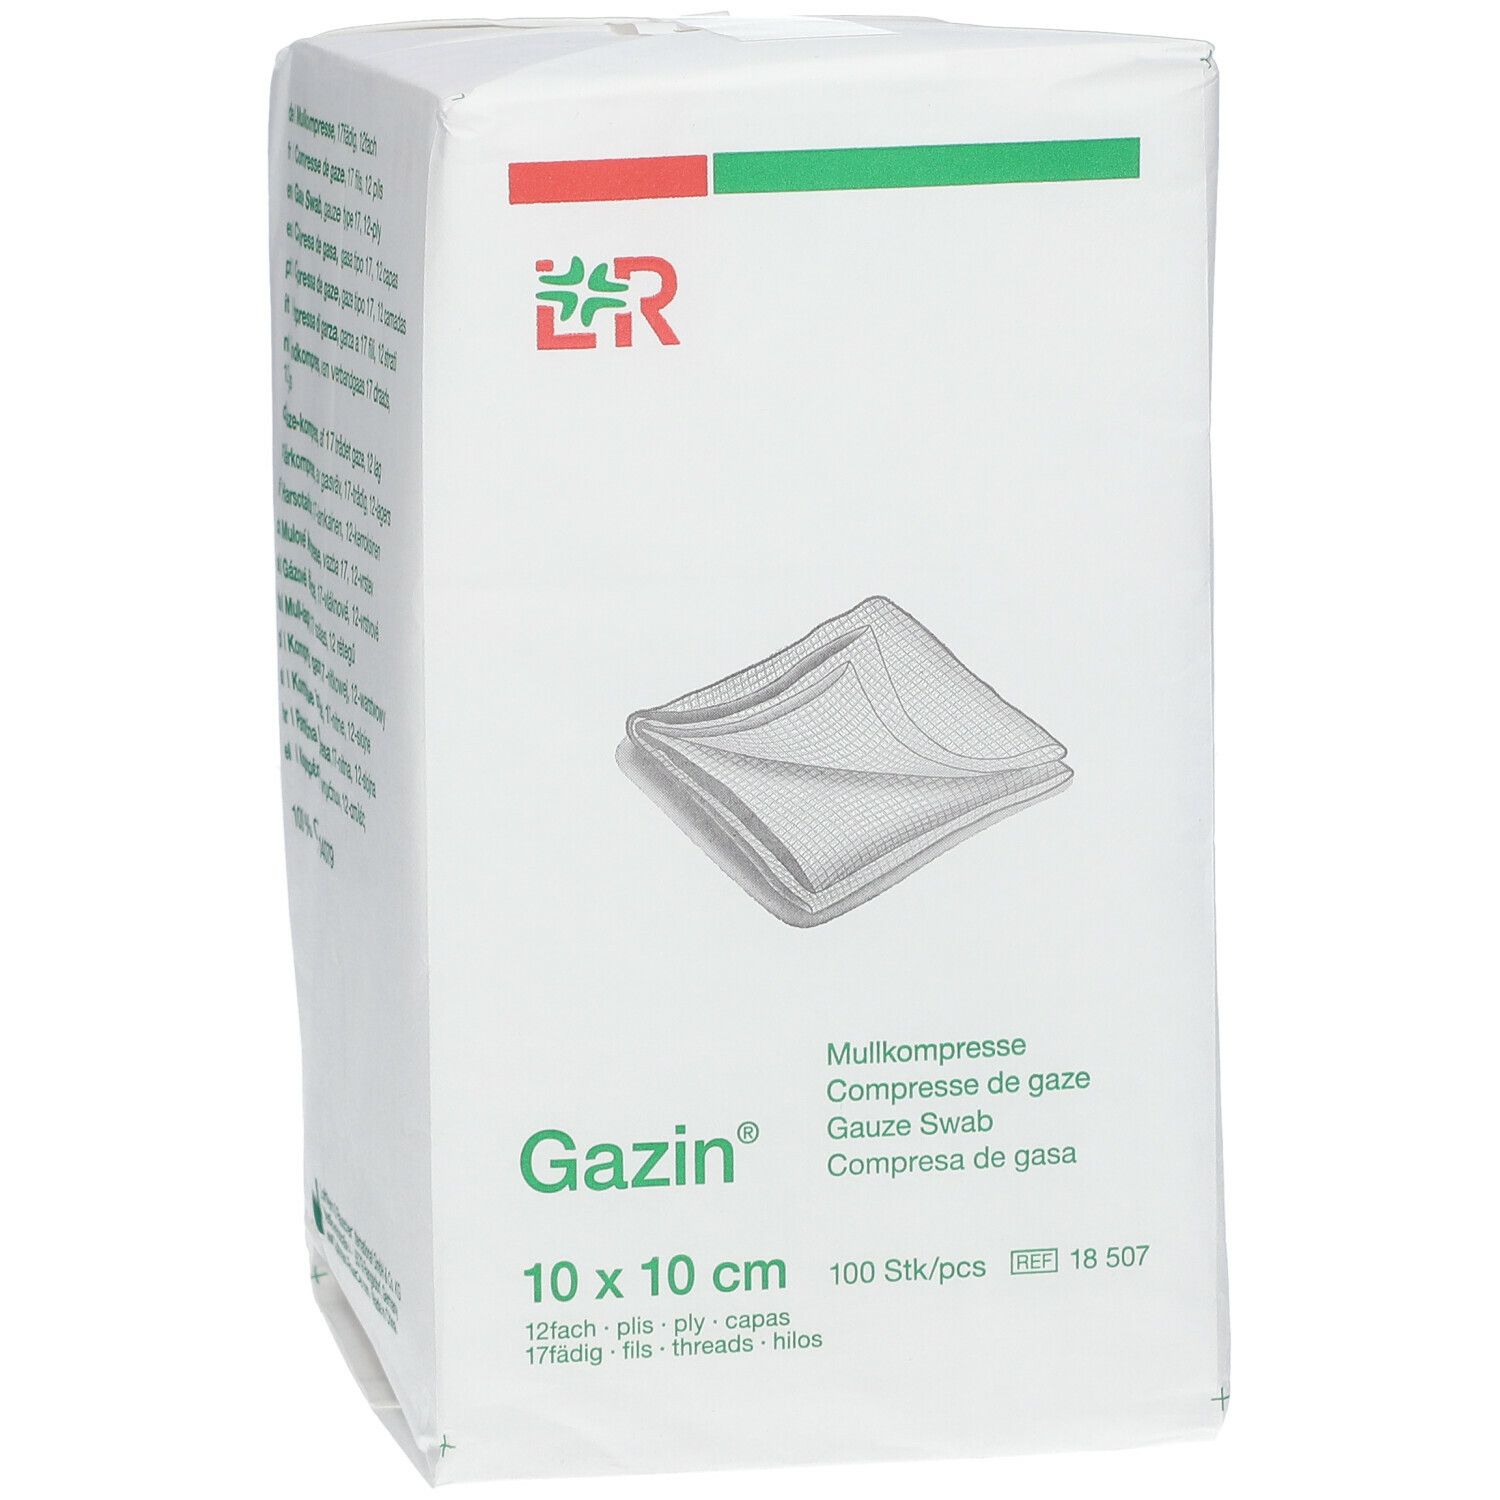 Lohmann & Rauscher Gazin® Compresse di Garza 10 x 10 cm Non Sterili